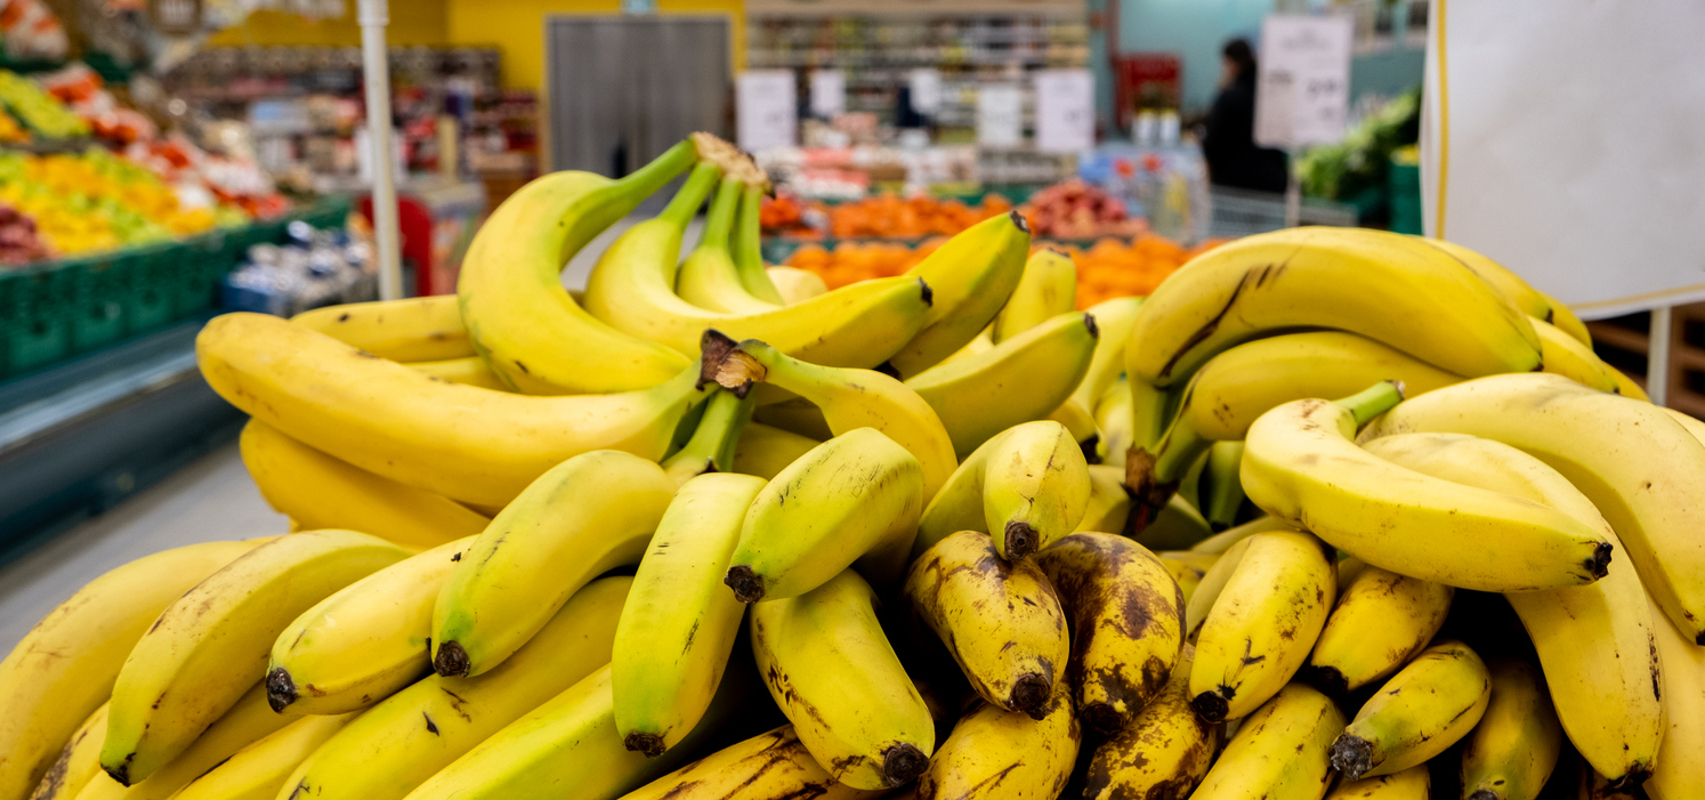 Veja os principais benefícios da banana para a saúde